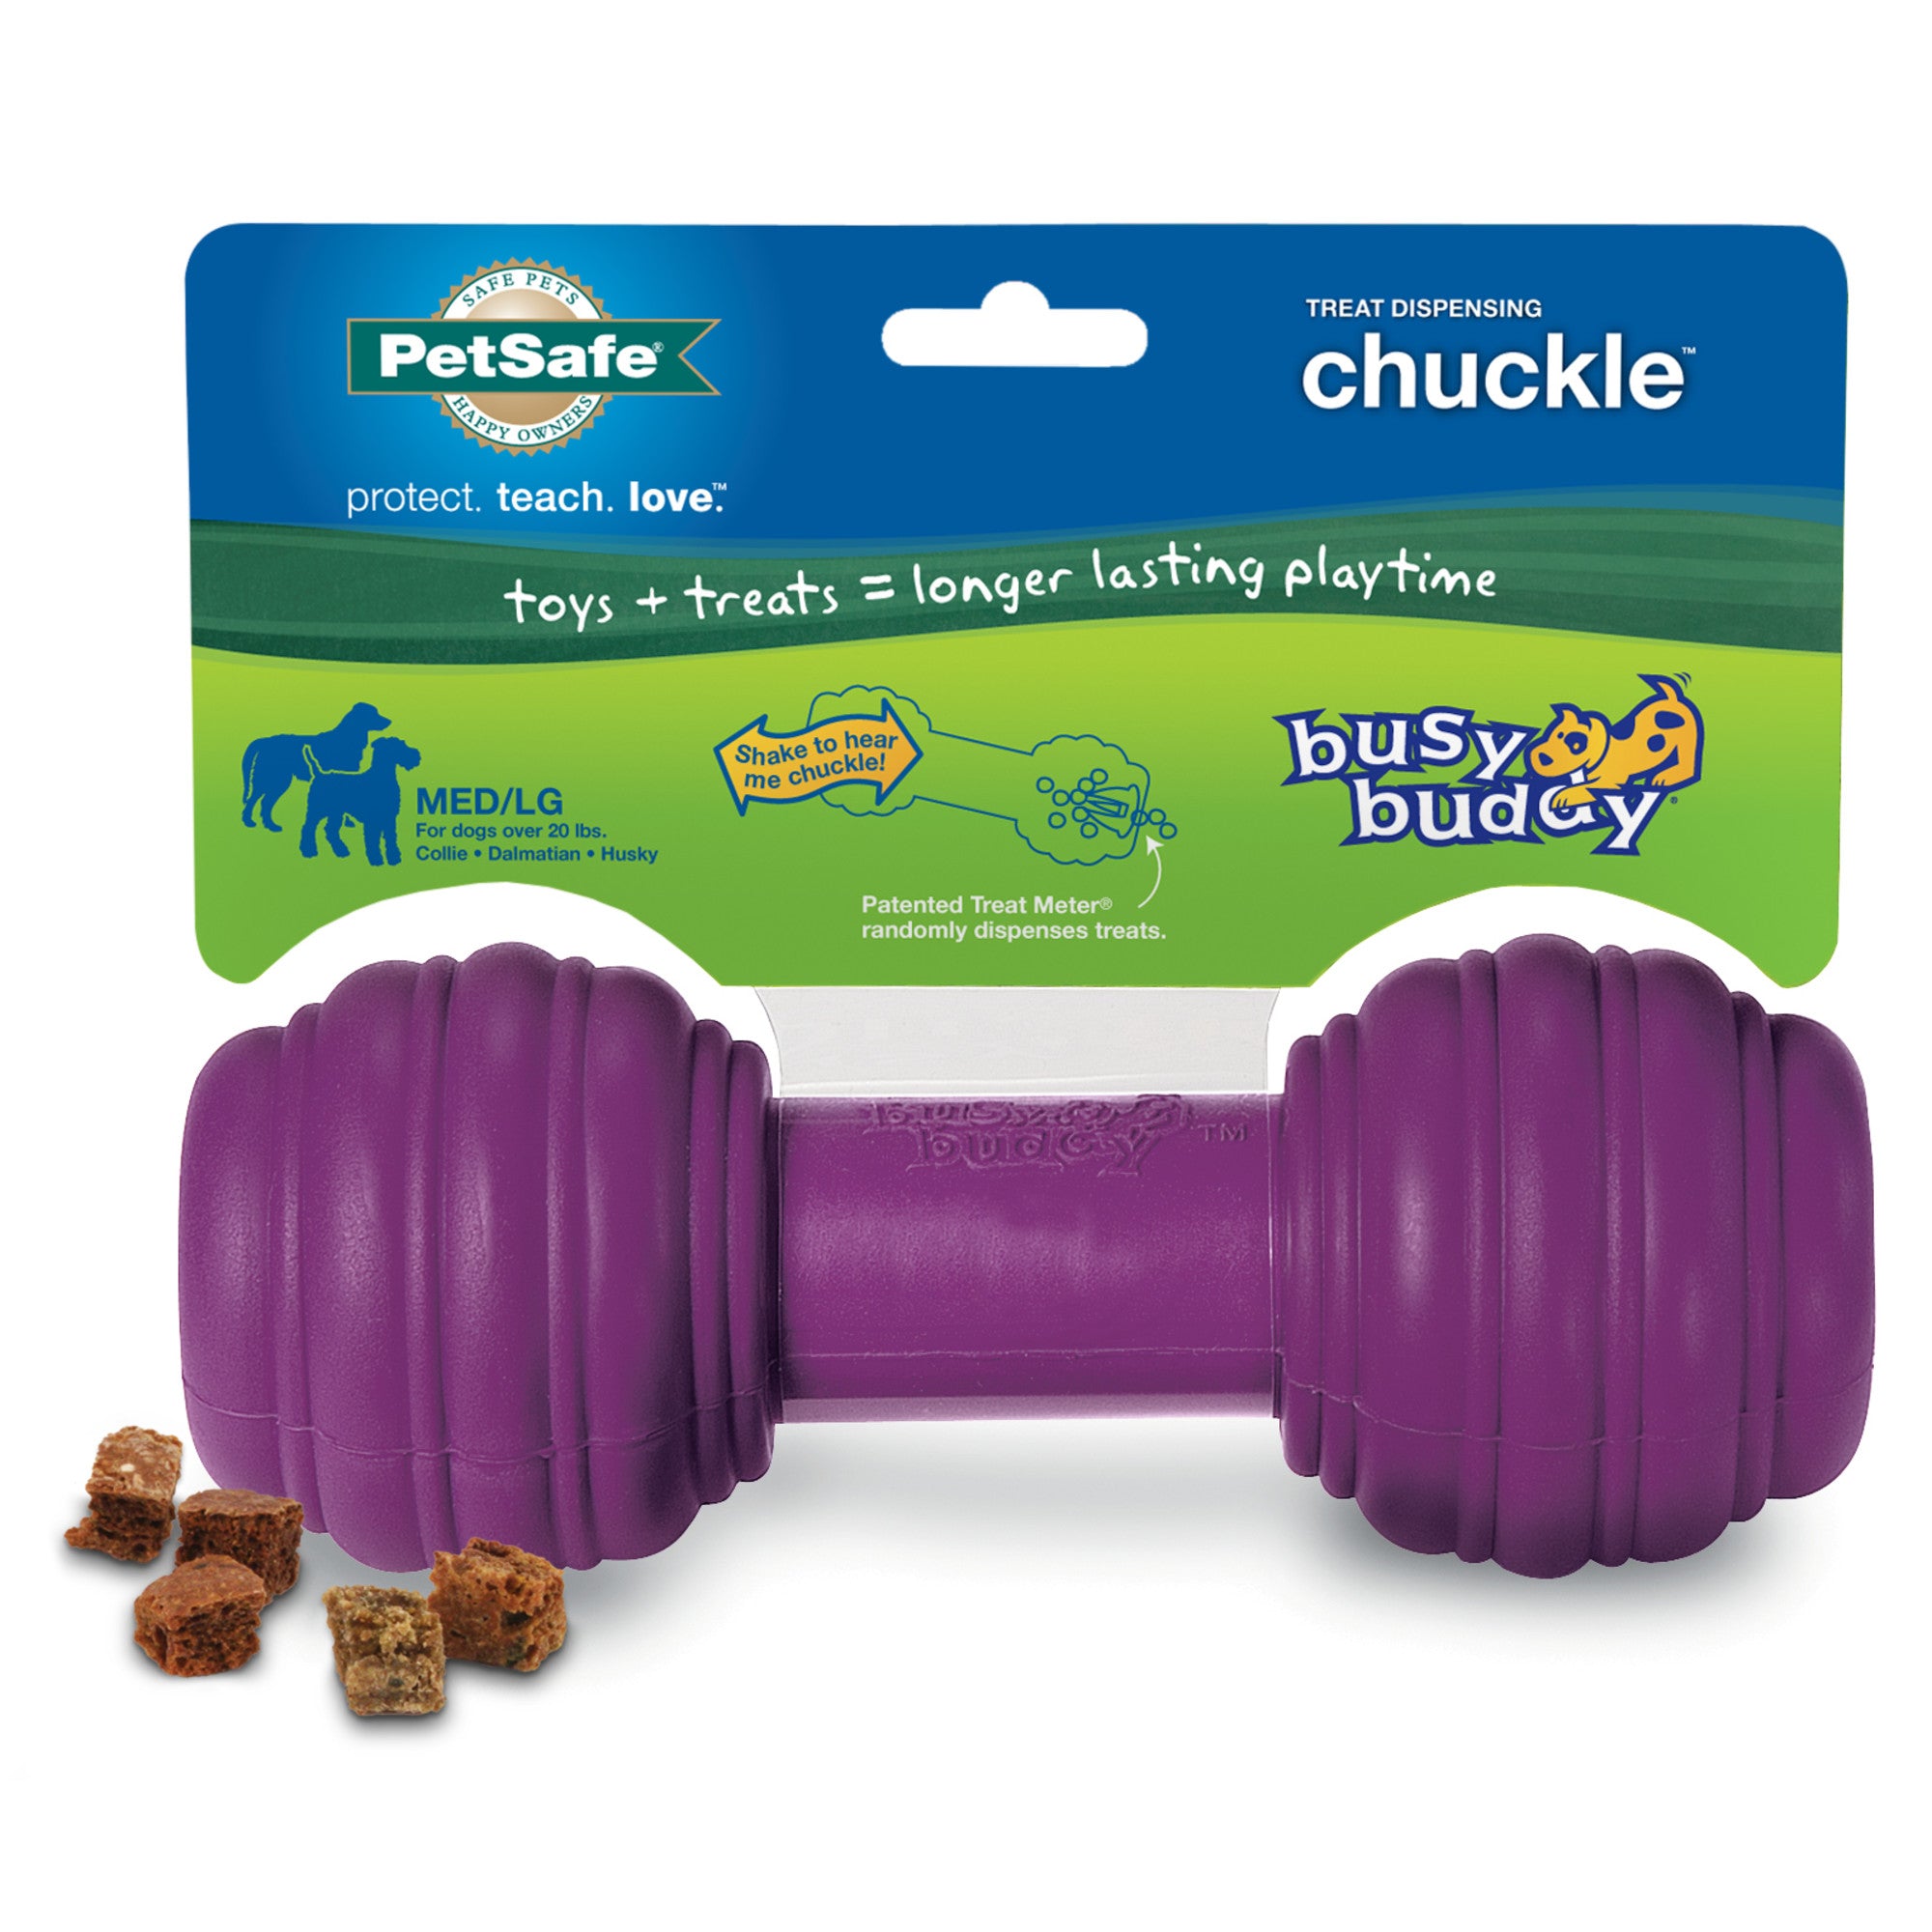 PetSafe Busy Buddy Chuckle Dog Toy – Petsense